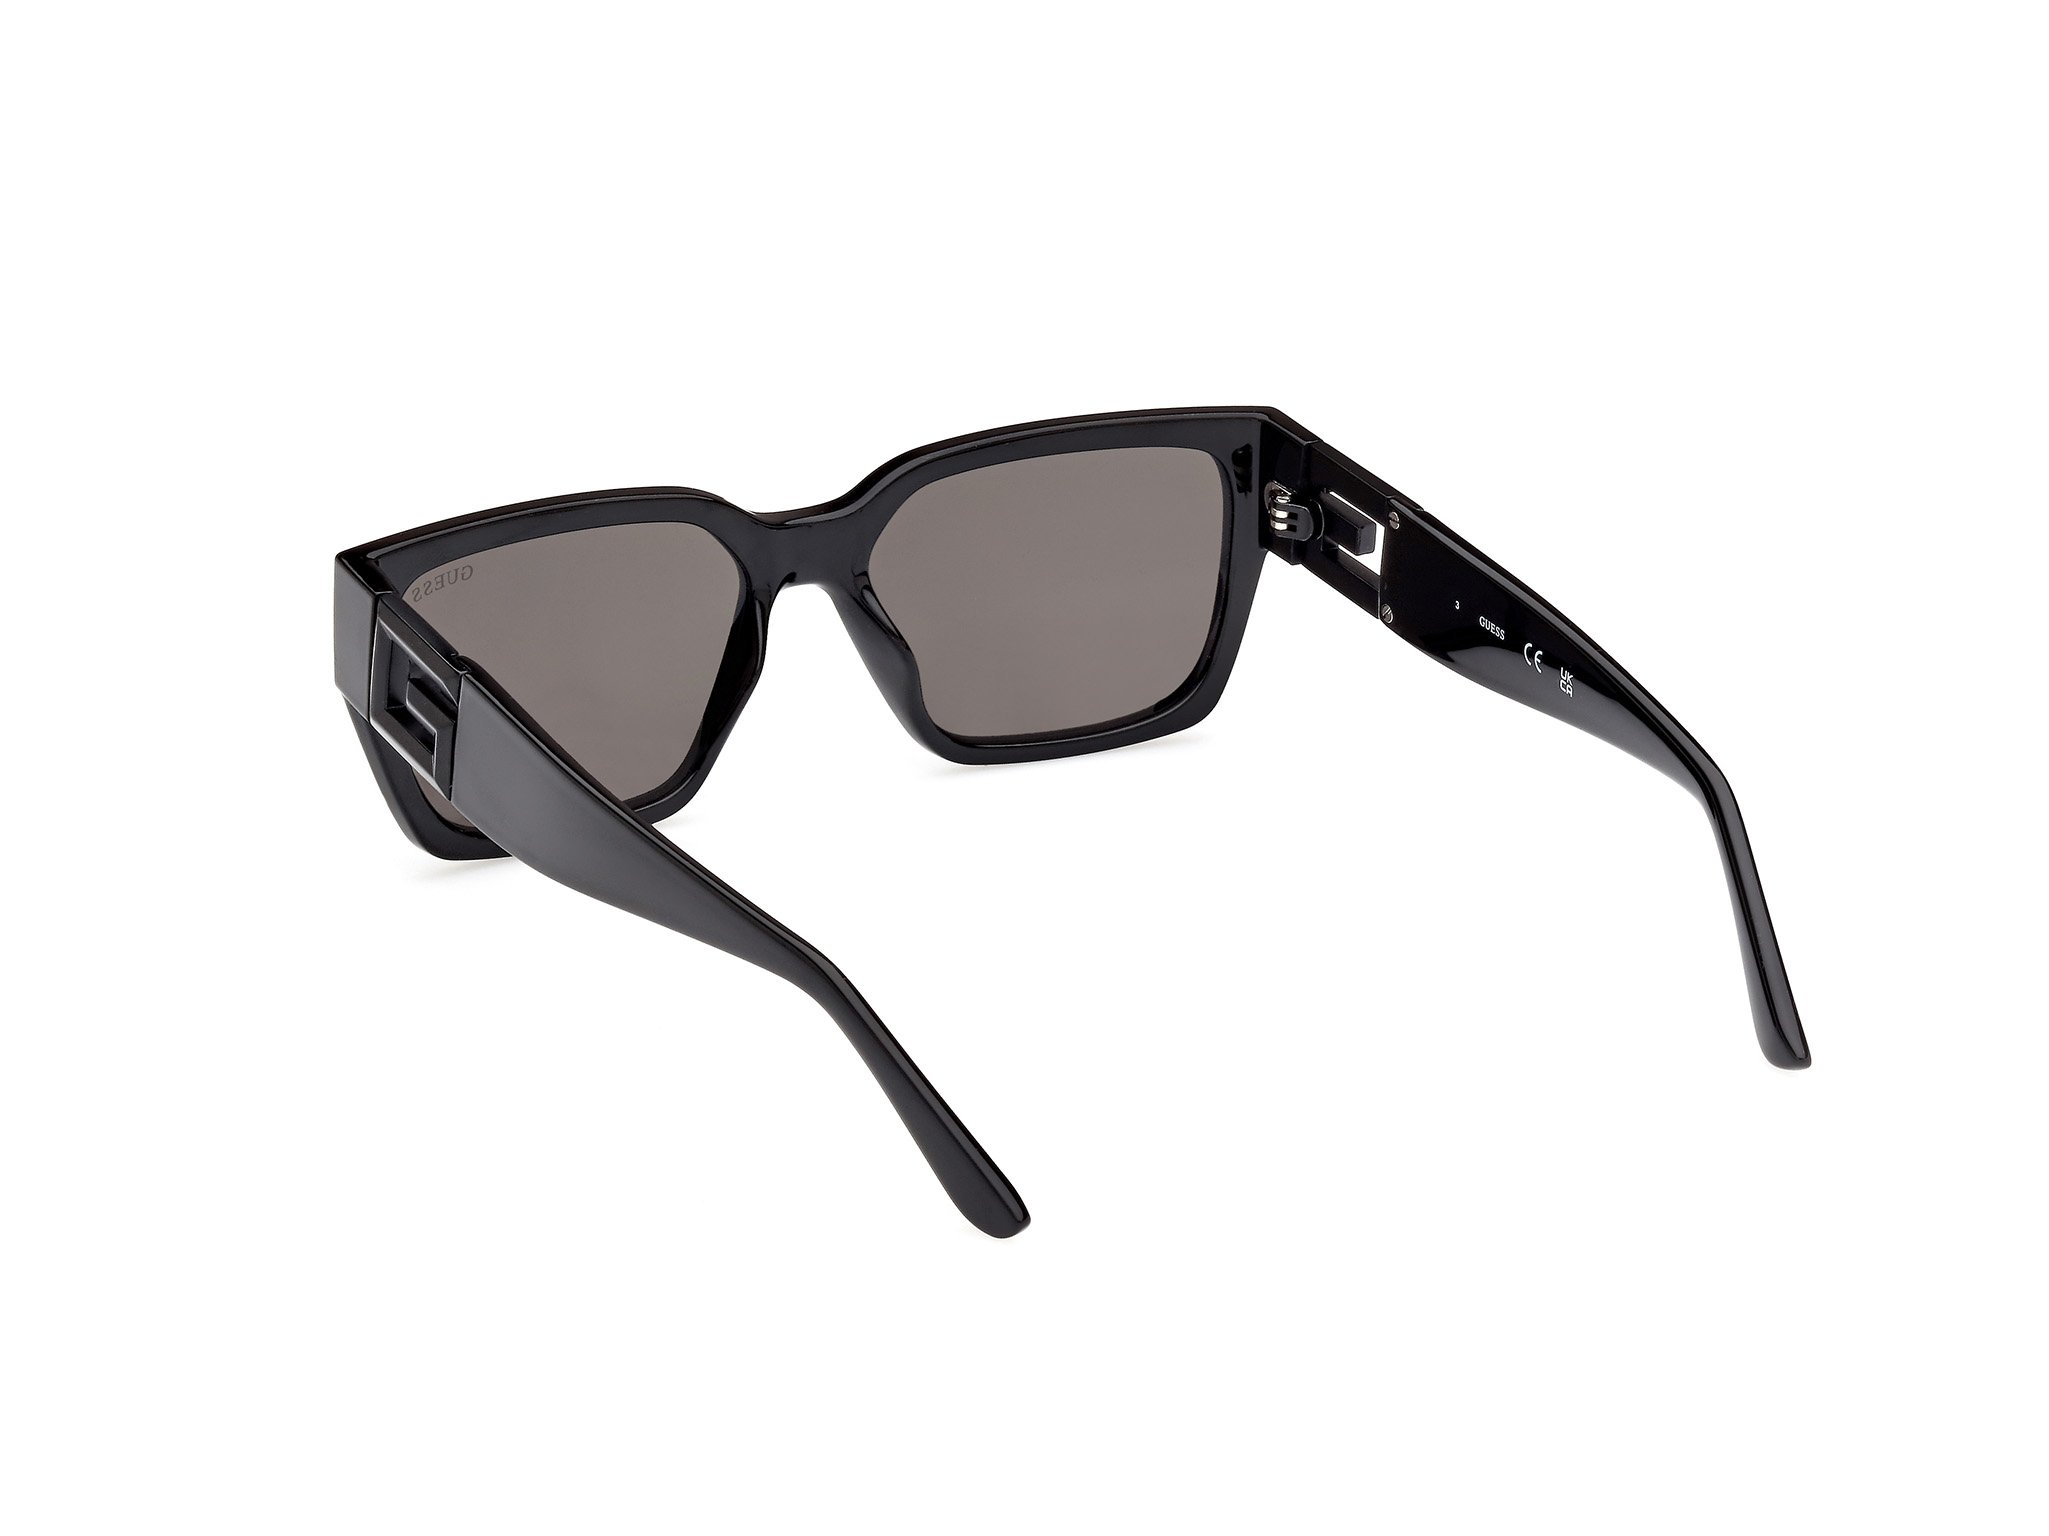 Das Bild zeigt die Sonnenbrille GU7886 01A von der Marke Guess in schwarz.